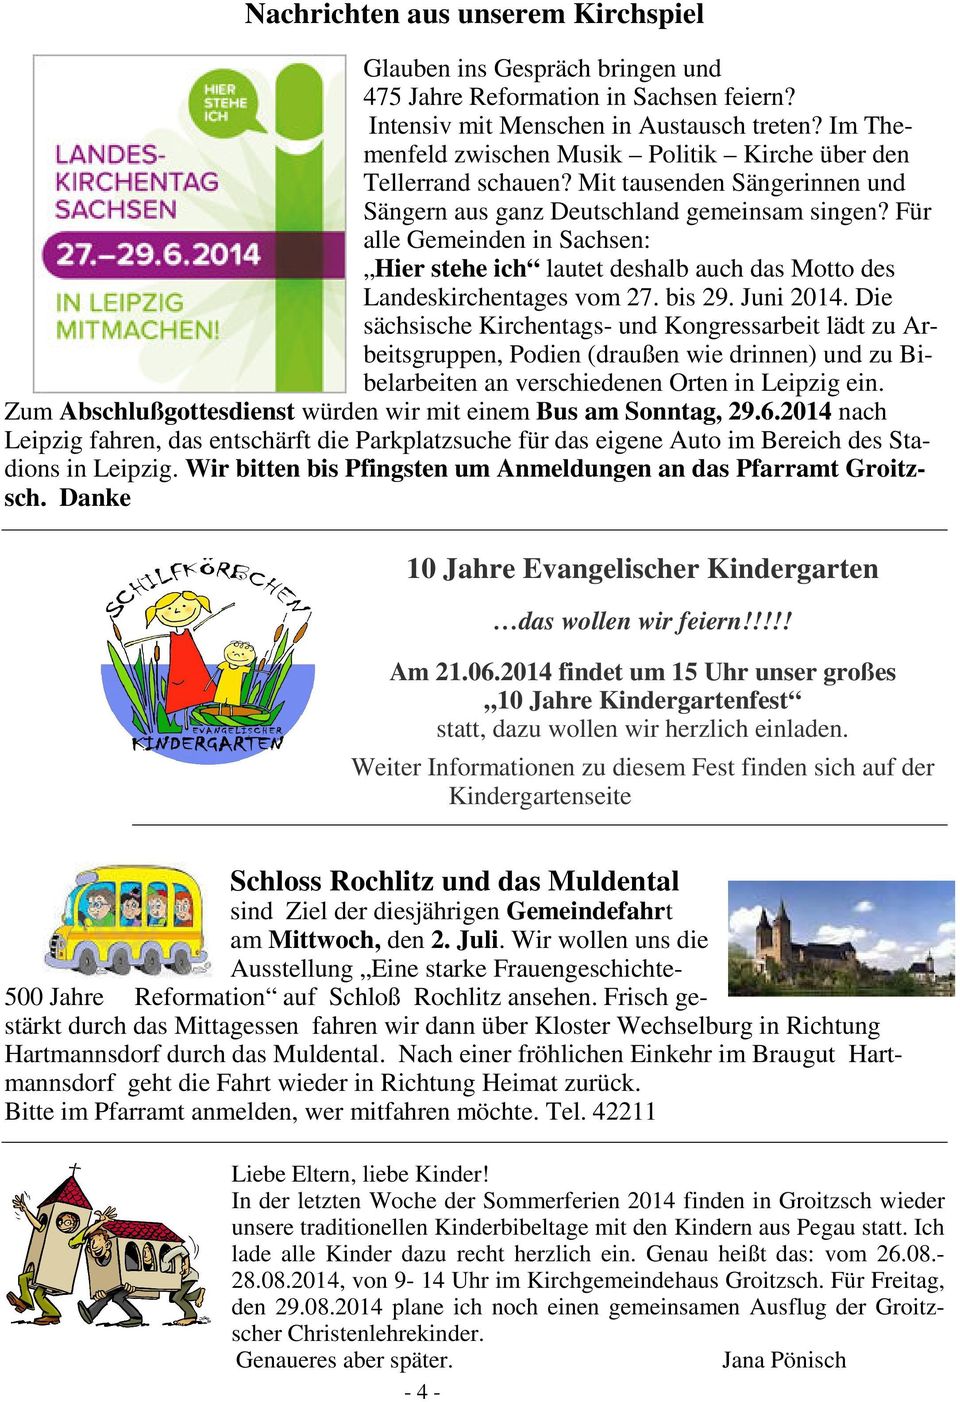 Für alle Gemeinden in Sachsen: Hier stehe ich lautet deshalb auch das Motto des Landeskirchentages vom 27. bis 29. Juni 2014.